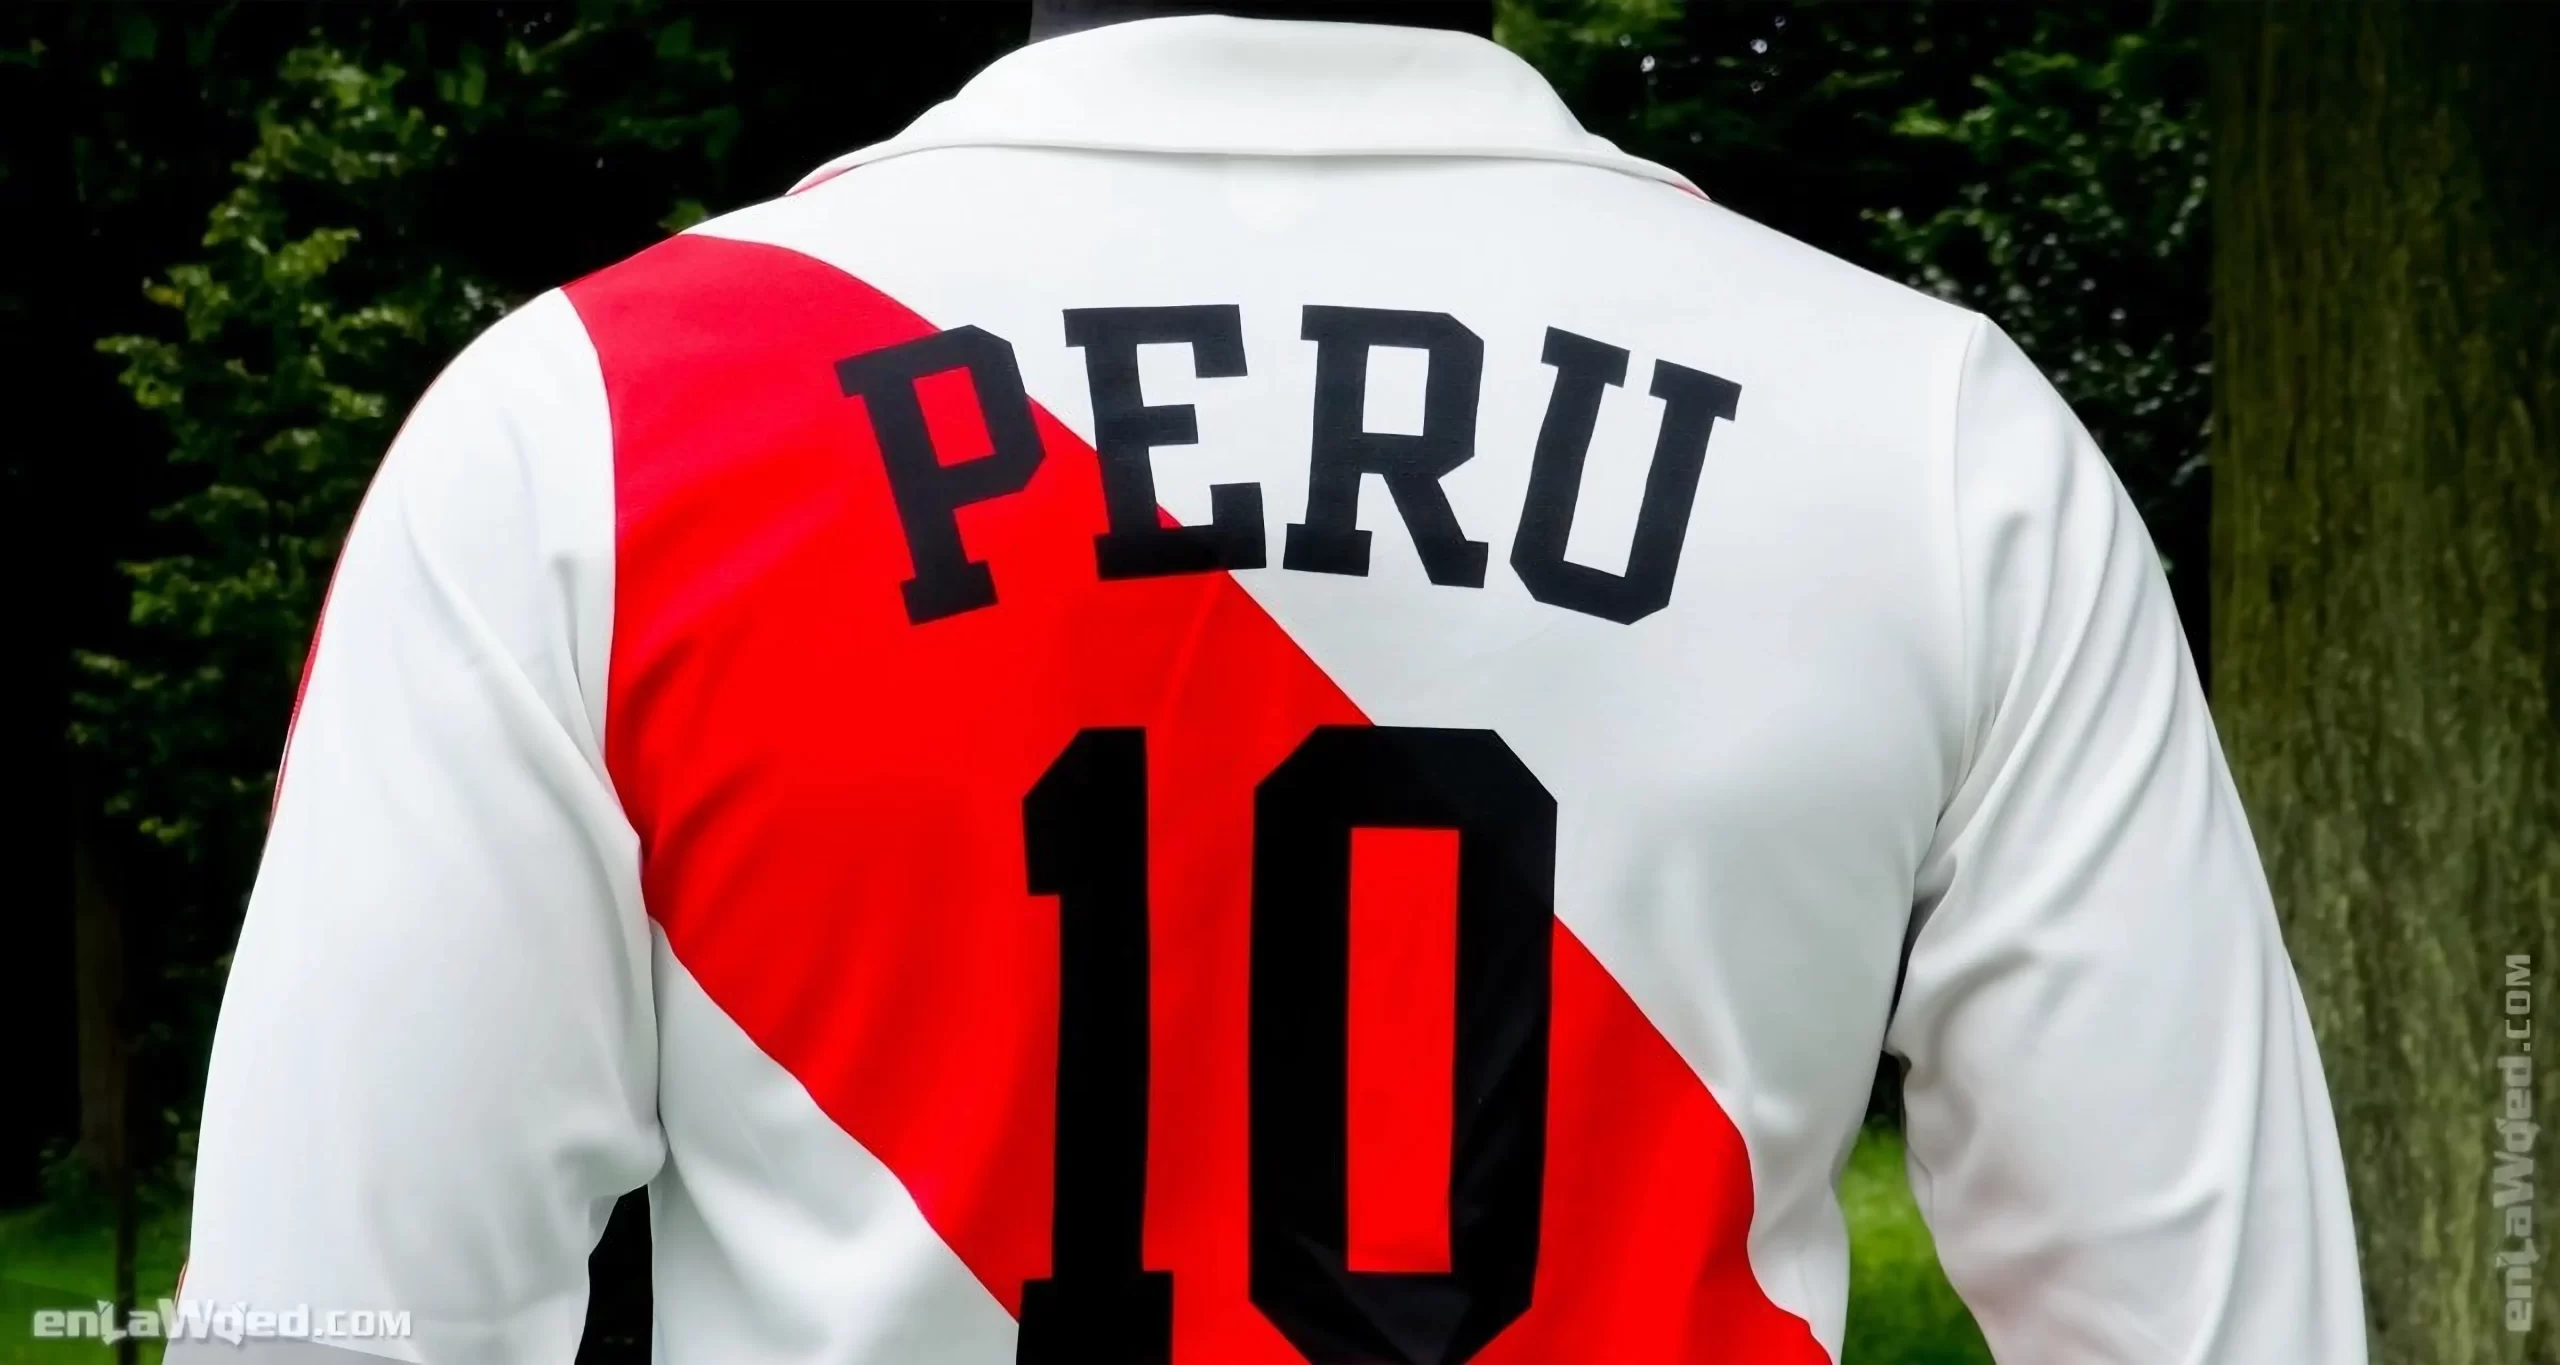 Men’s 2005 Peru ’78 Cubillas LS by Adidas Originals: Defiance (EnLawded.com file #lmc4m5vy0t5faumvjri)